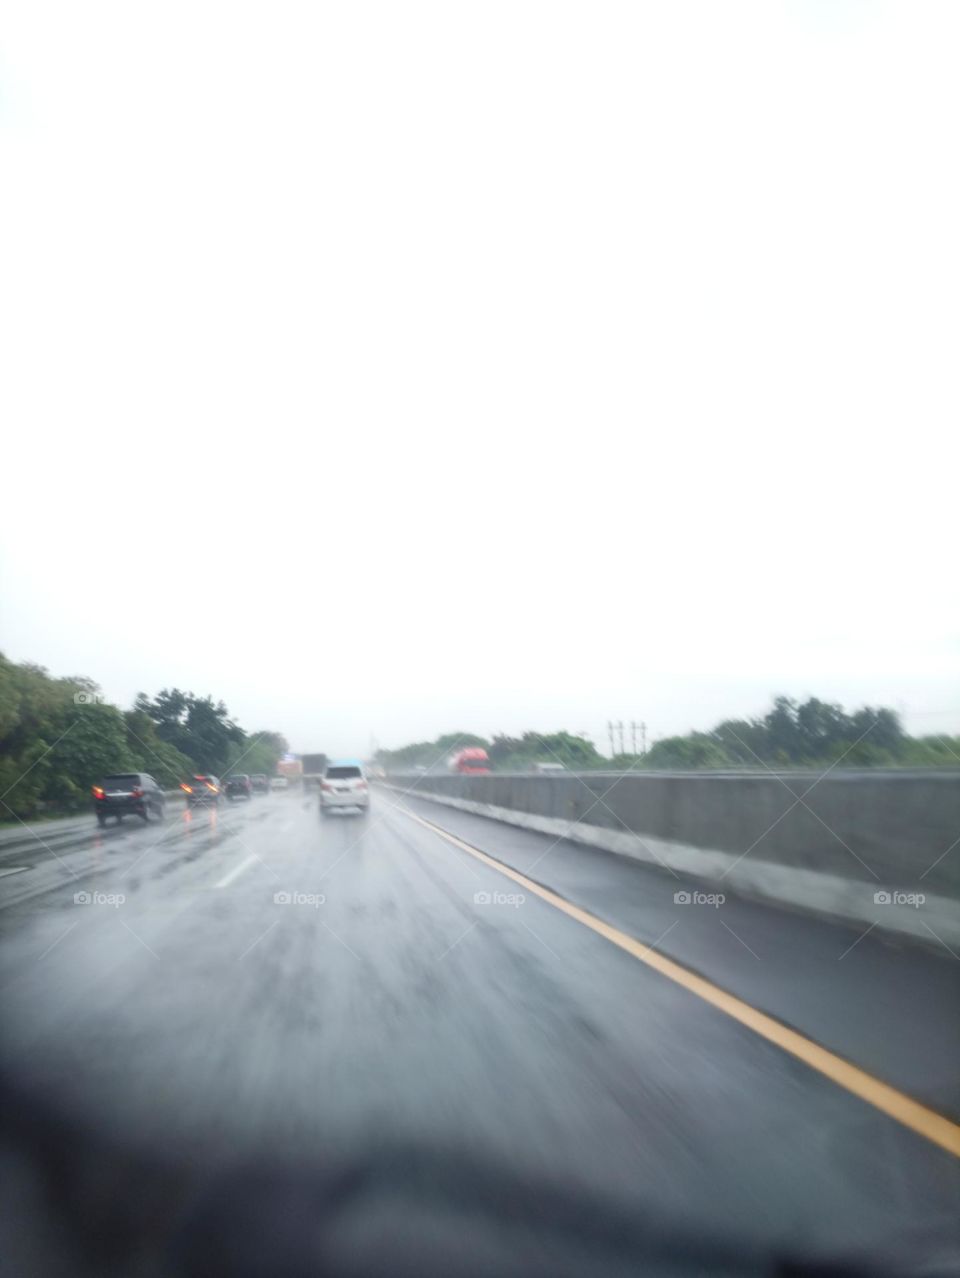 raining on the way